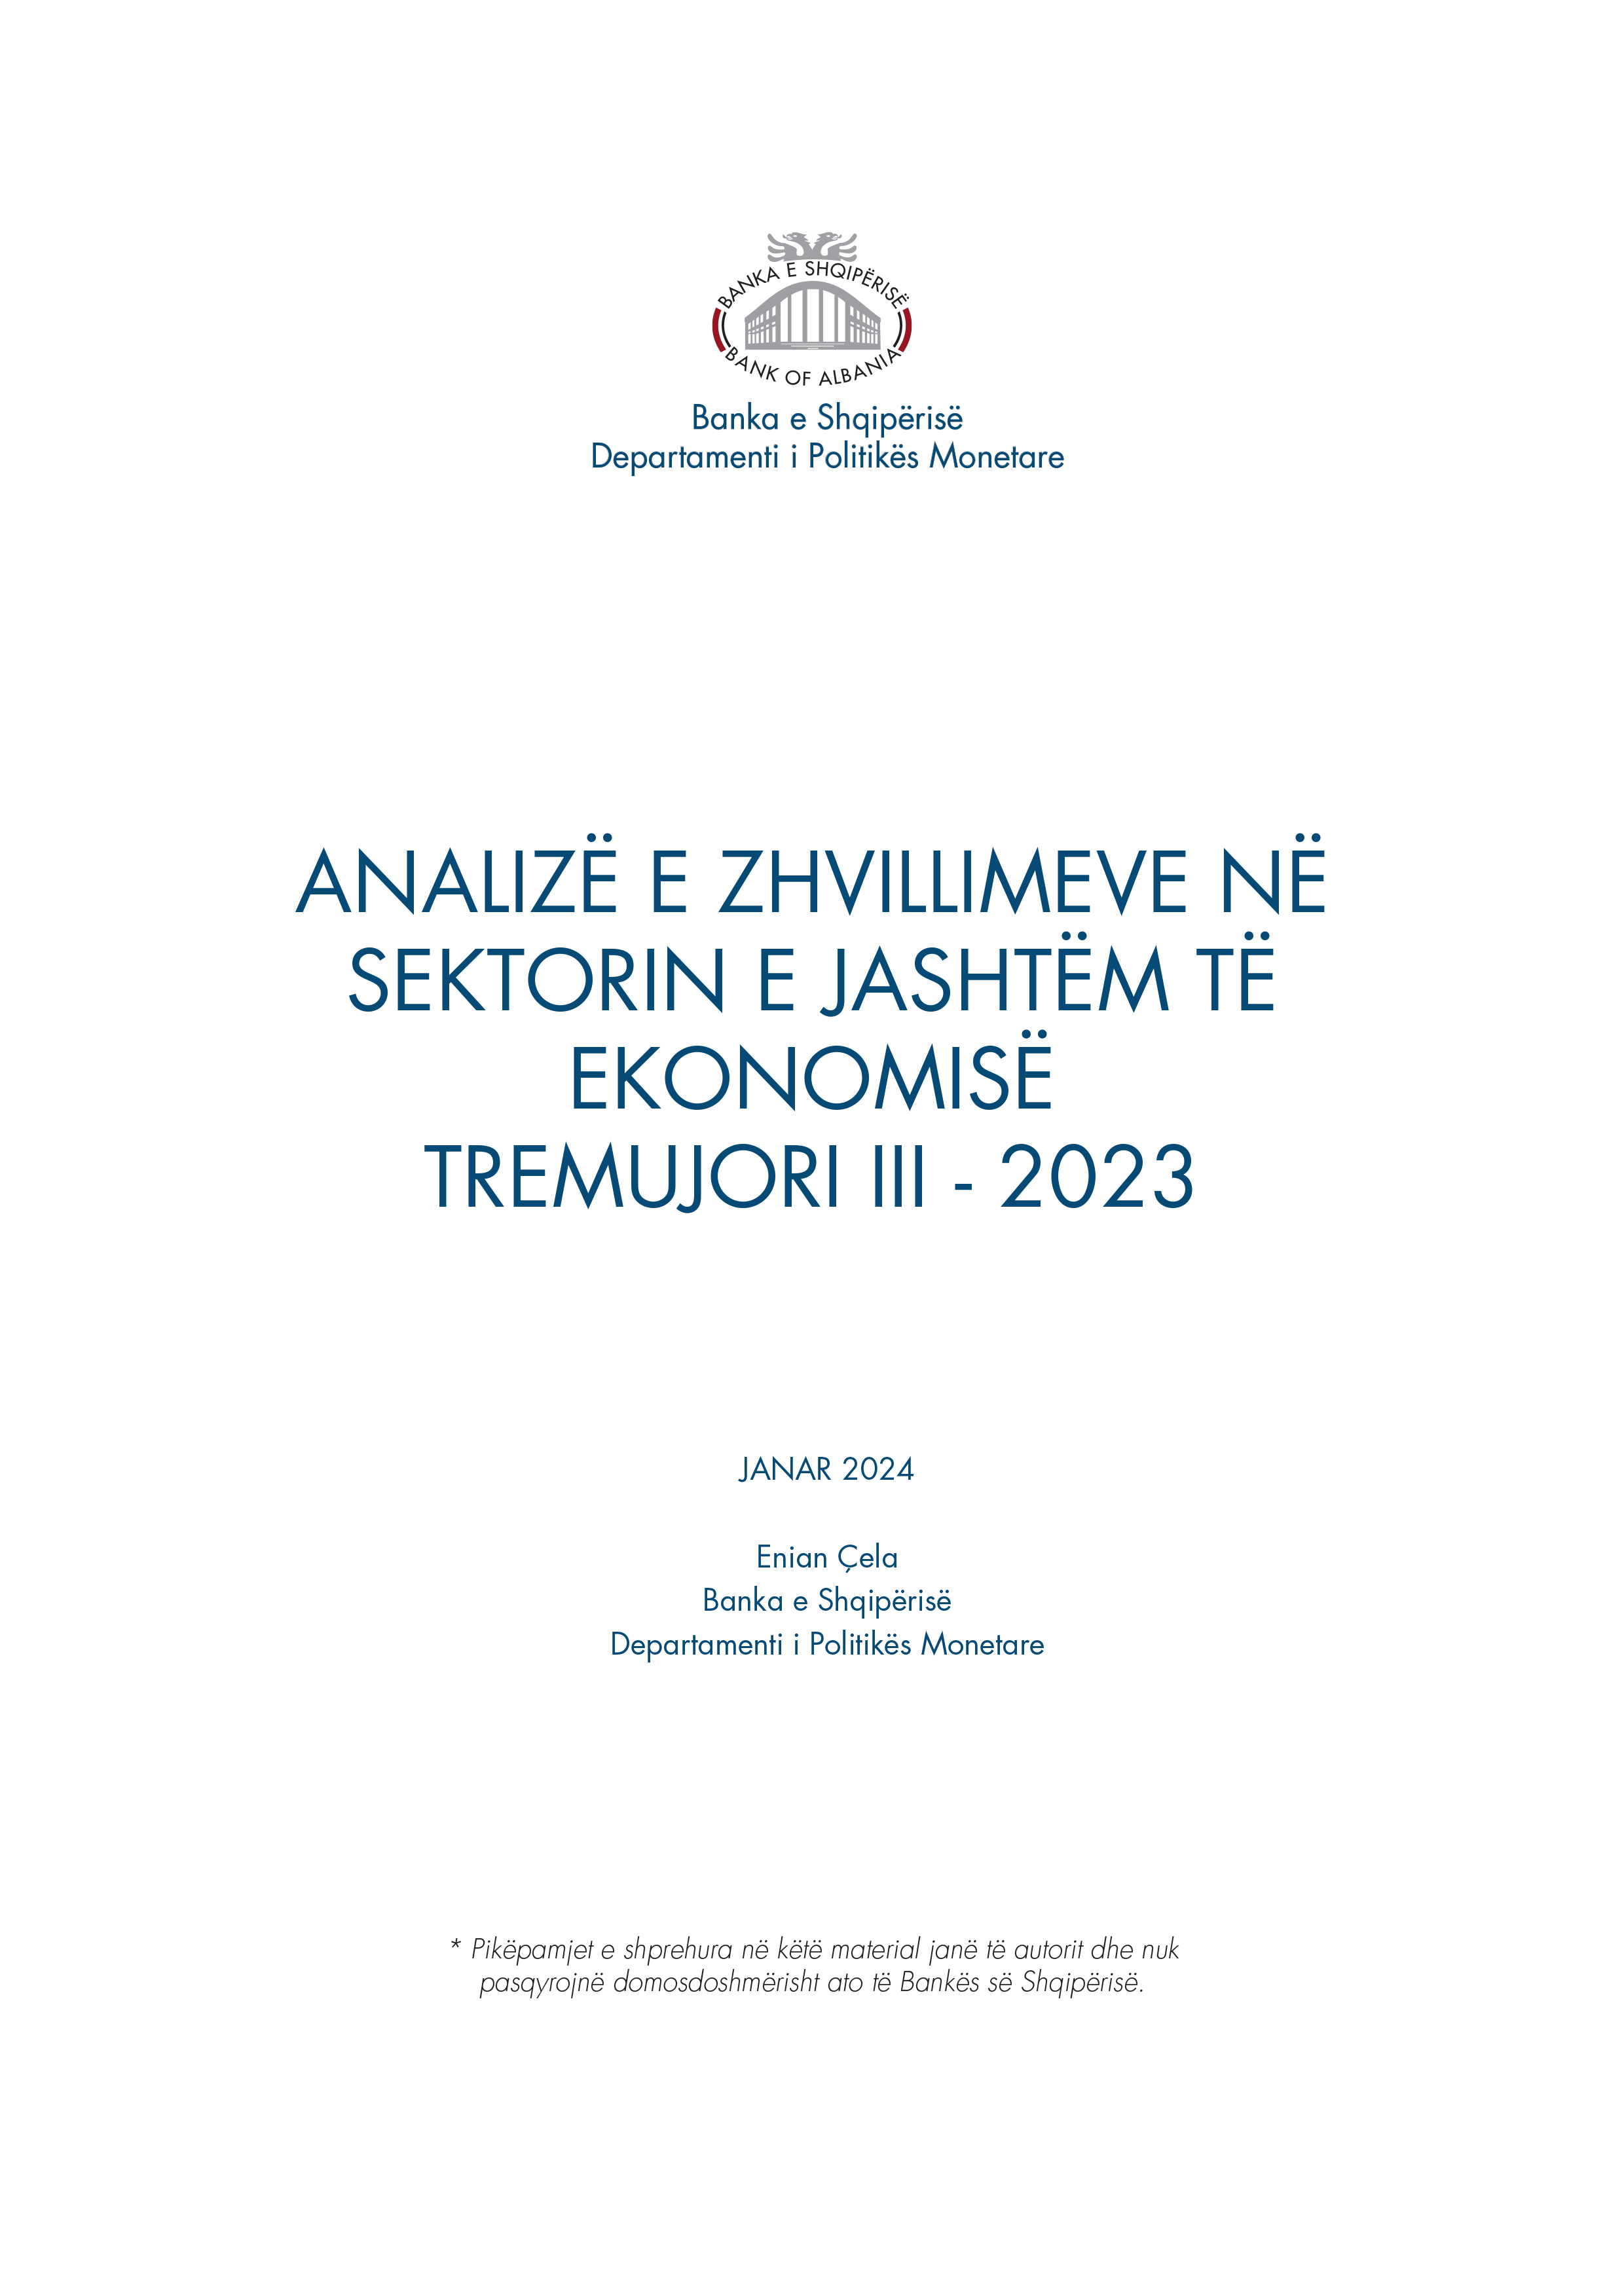 Analiza e ''Zhvillimeve në sektorin e jashtëm të ekonomisë'' T3-2023